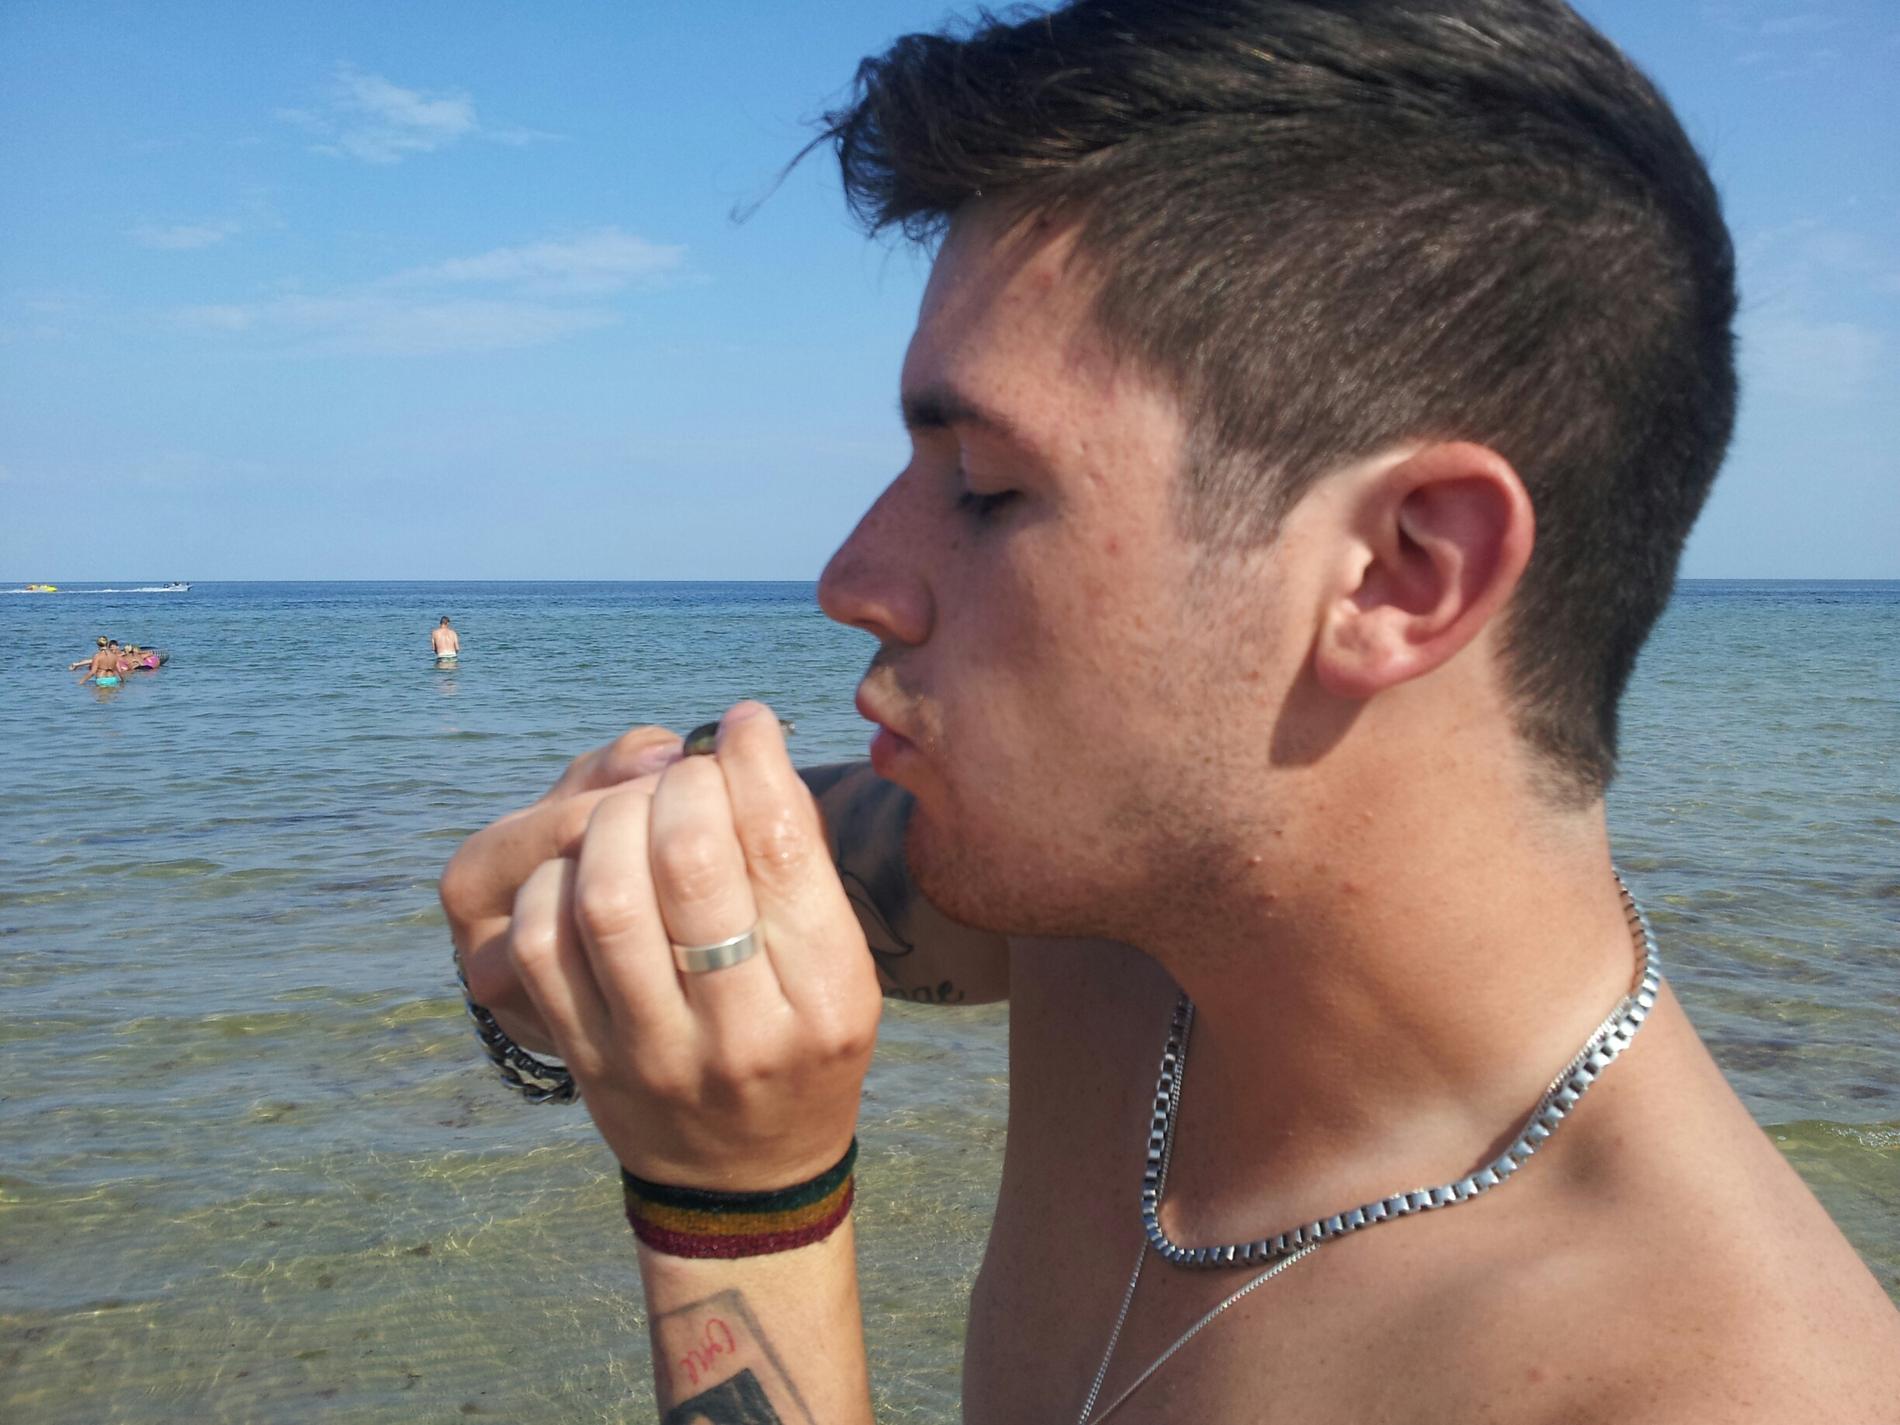 ”Vår 20-årige son hitta en liten fisk som han skulle pussa på. Sånt händer bara på semestern”